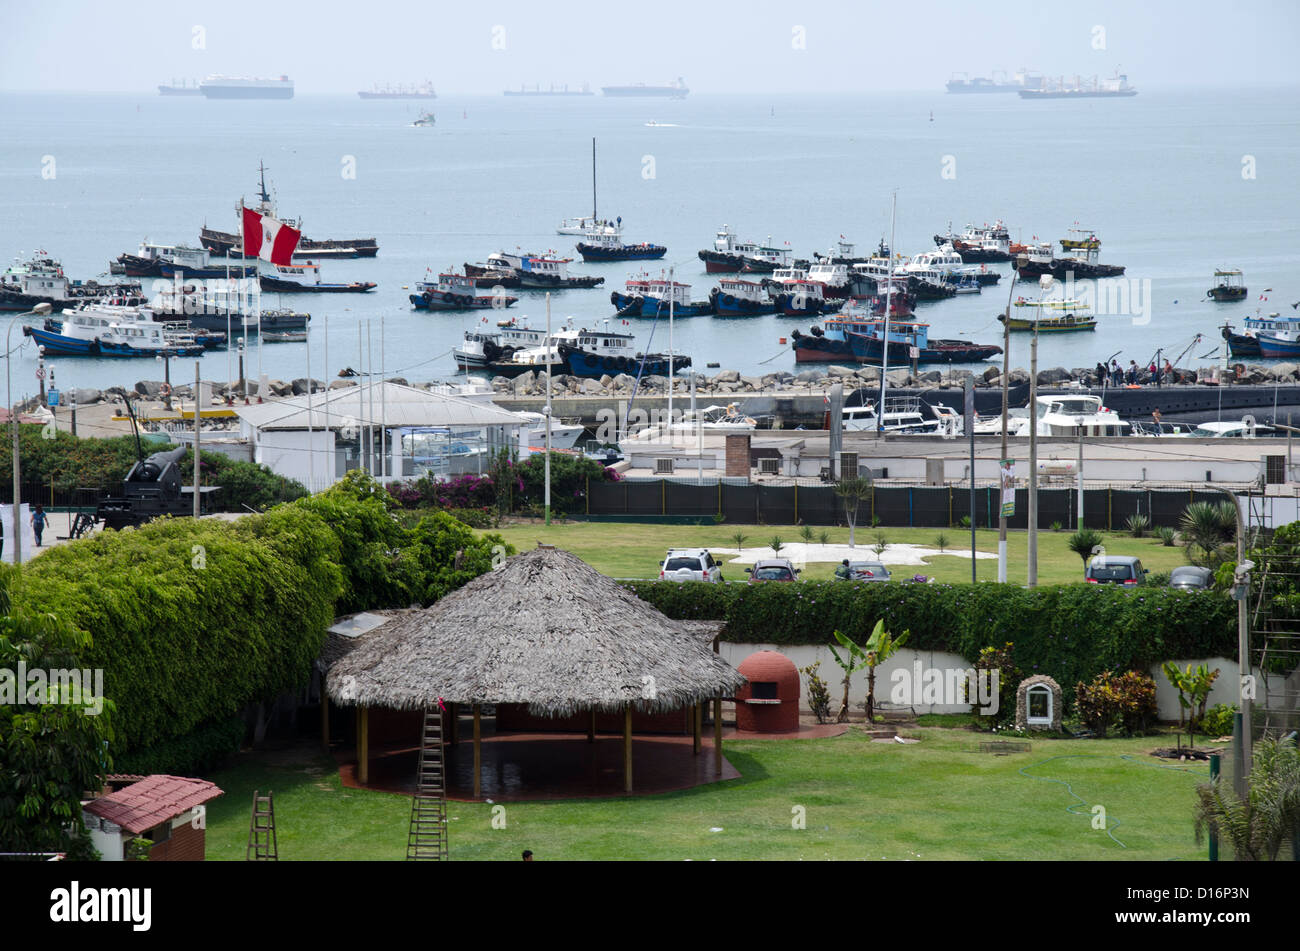 Port de Callao. La ville de Lima. Le Pérou. Banque D'Images